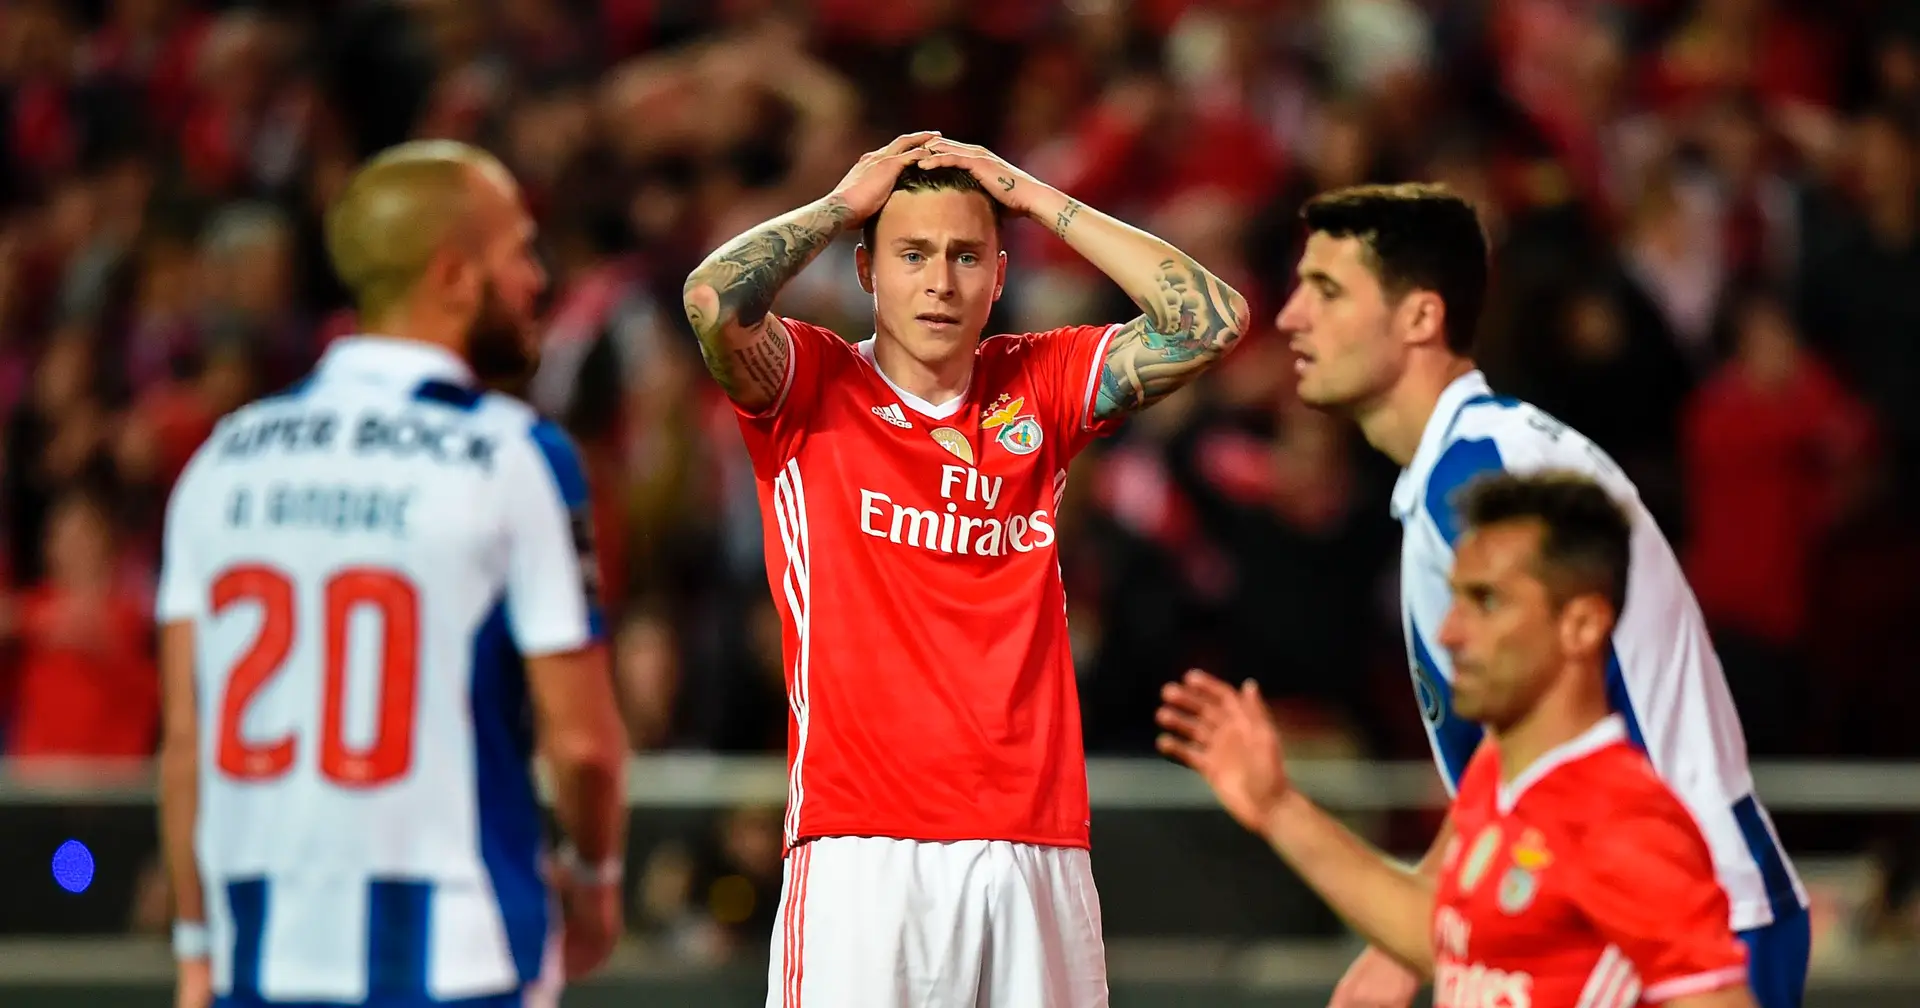 Futebol: Arsenal perdeu pontos, City e United aproximam-se da liderança